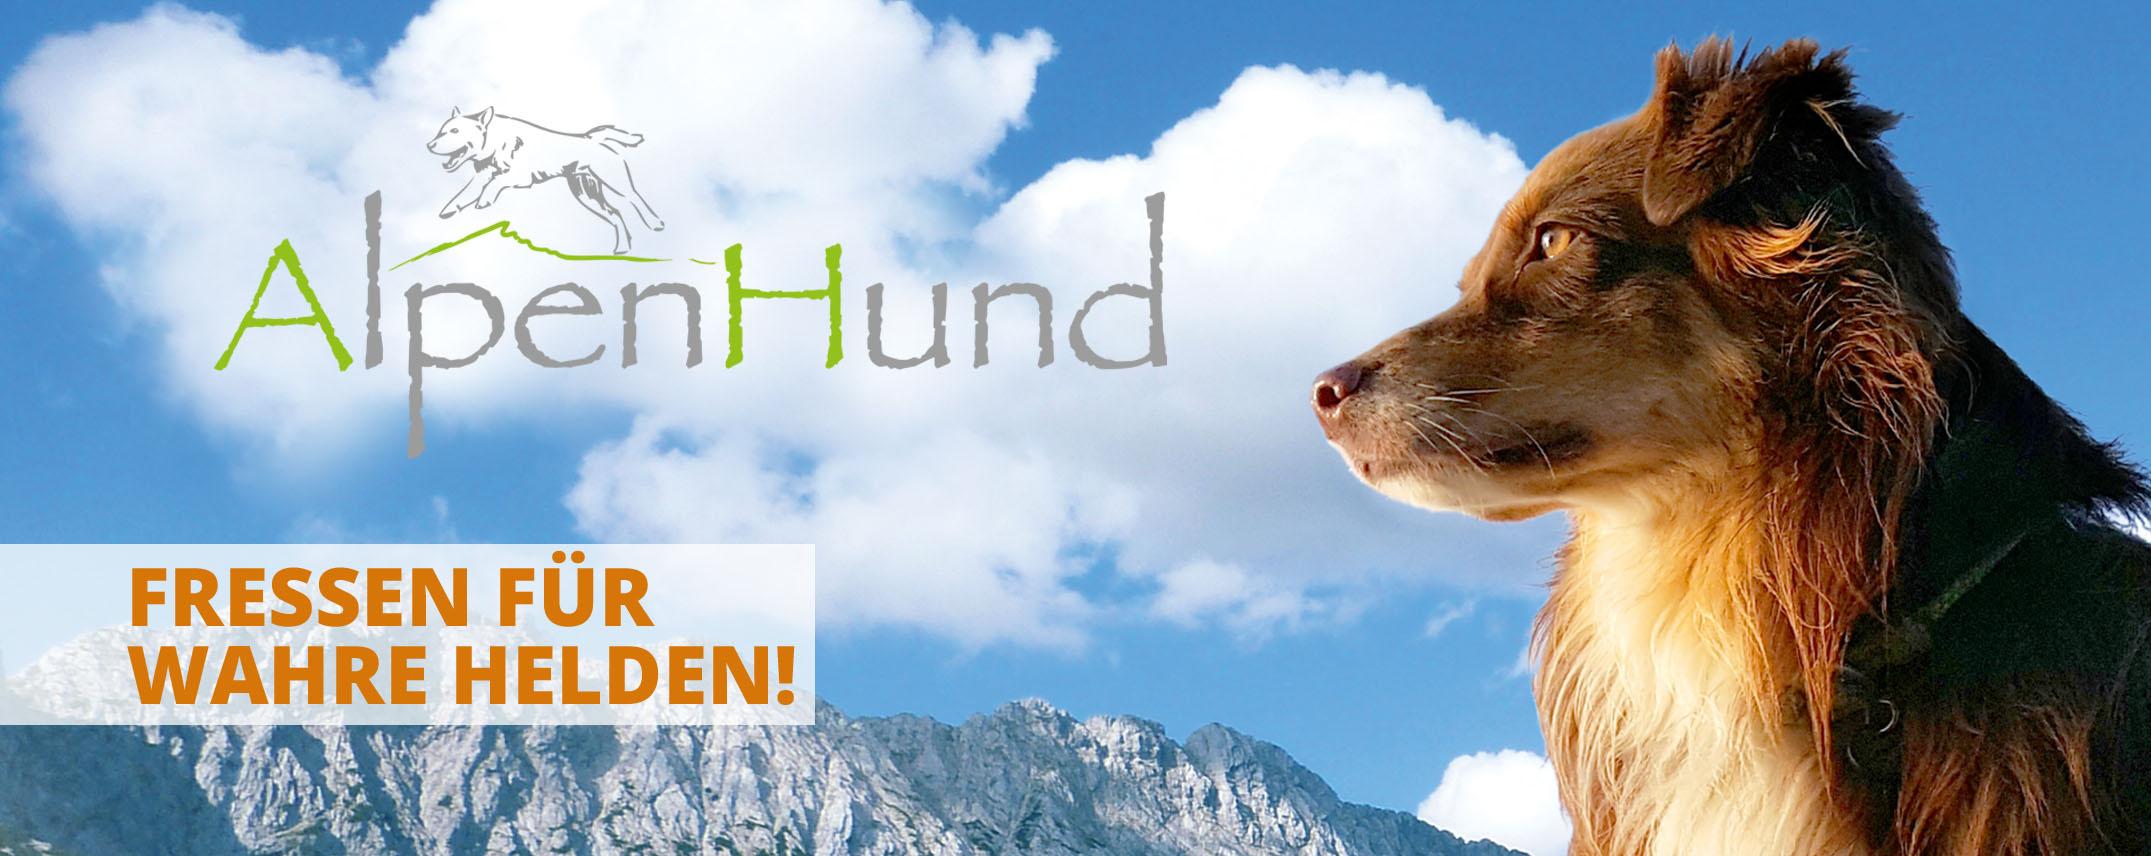 alpenhund_banner2